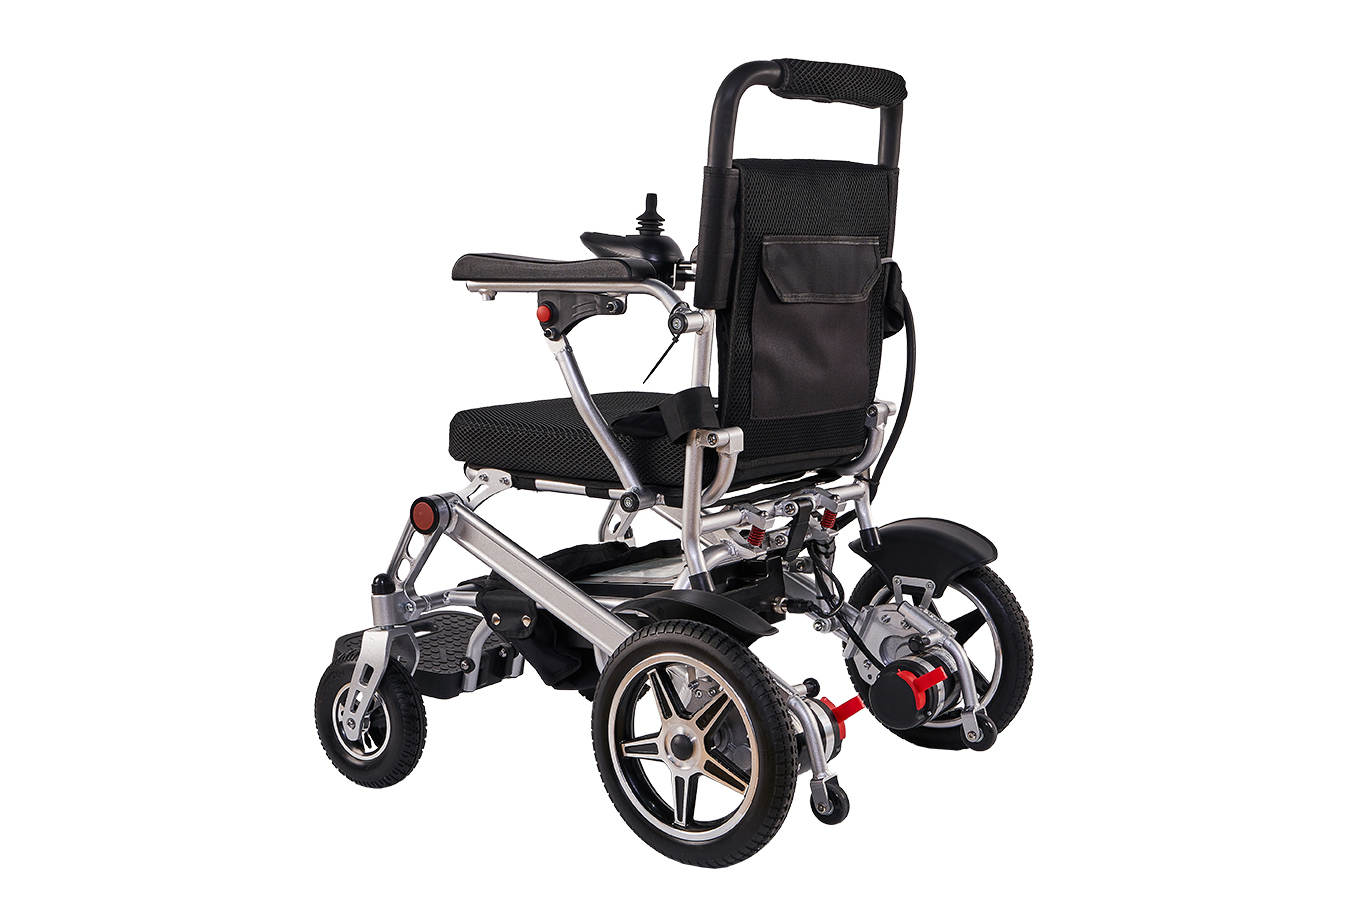 Jeste li ikada vidjeli takva električna invalidska kolica? Električna invalidska kolica koja mijenjaju igru: prijenosna lagana rješenja za poboljšanu mobilnost